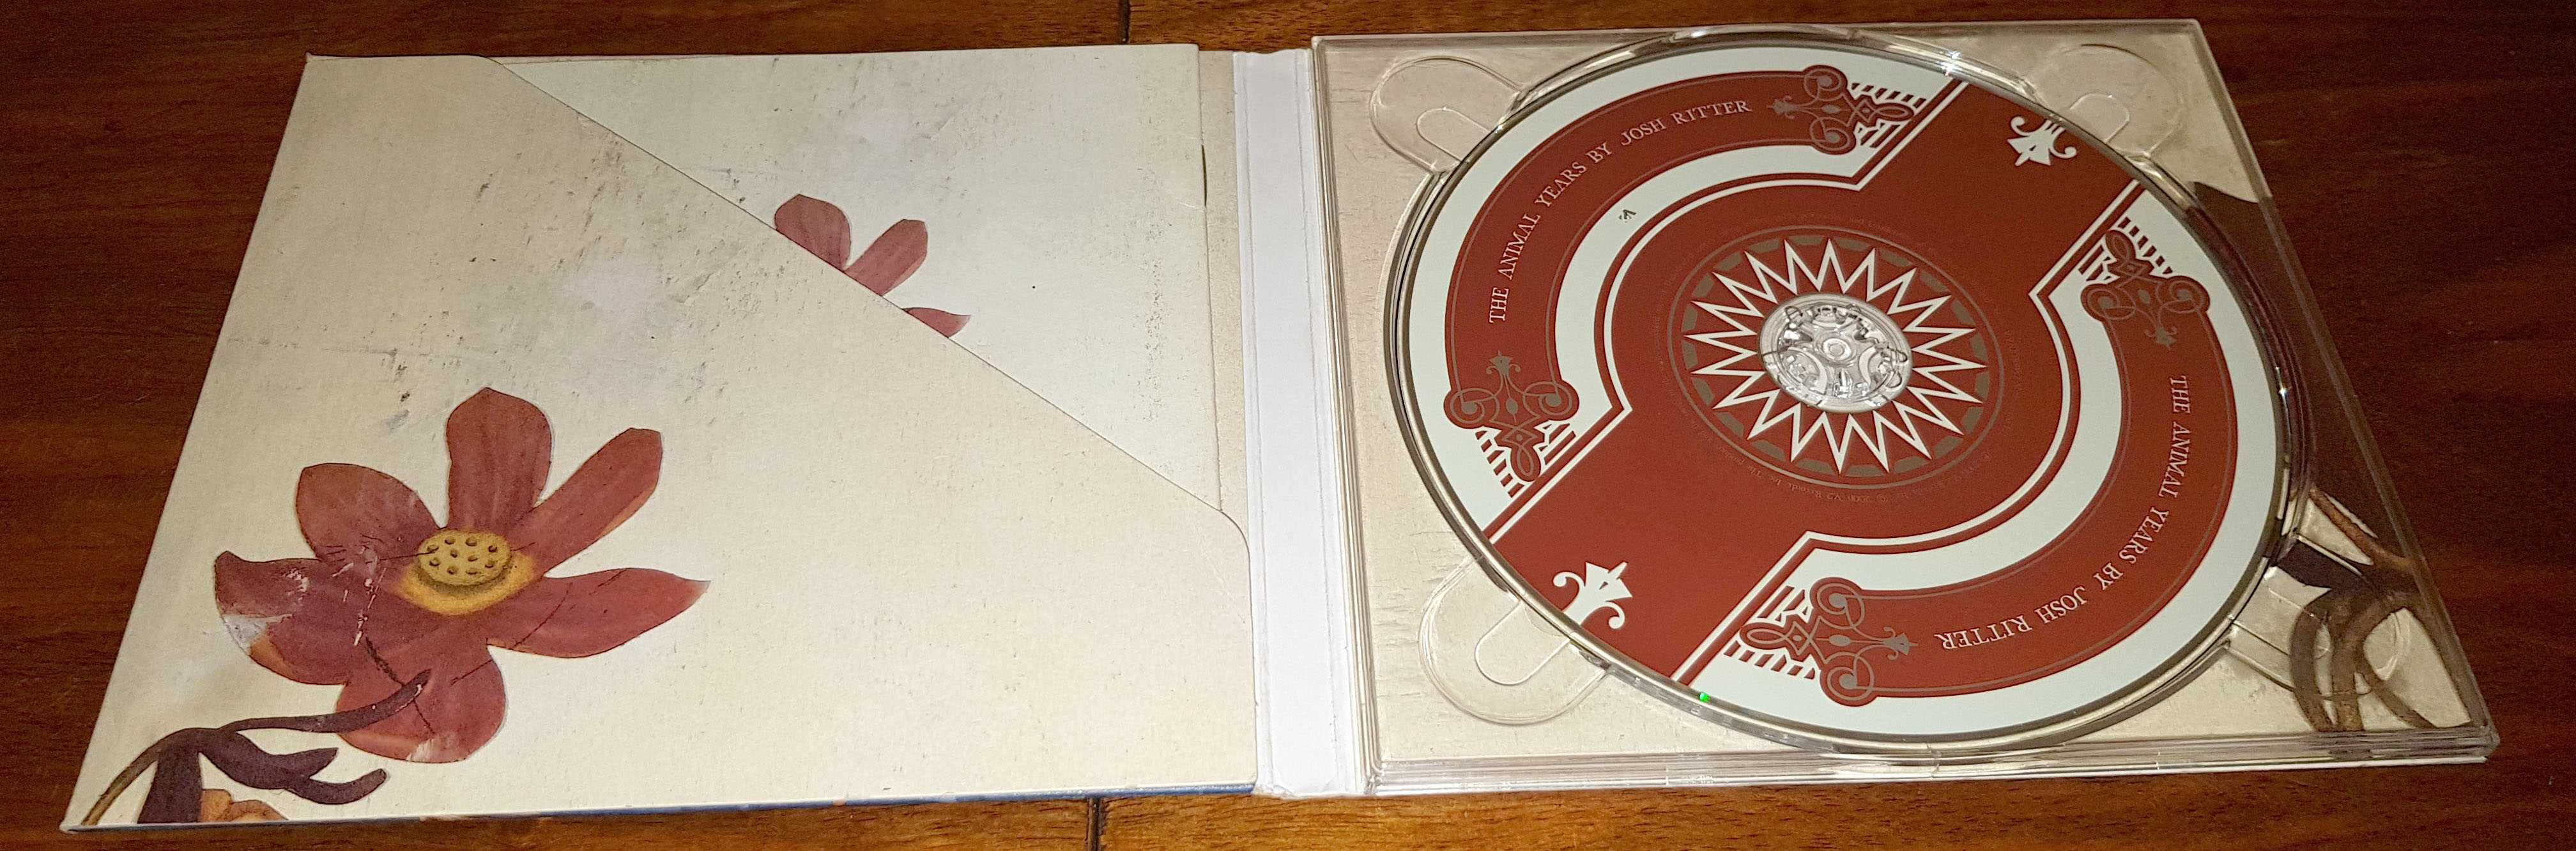 Josh Ritter The Animal Years CD